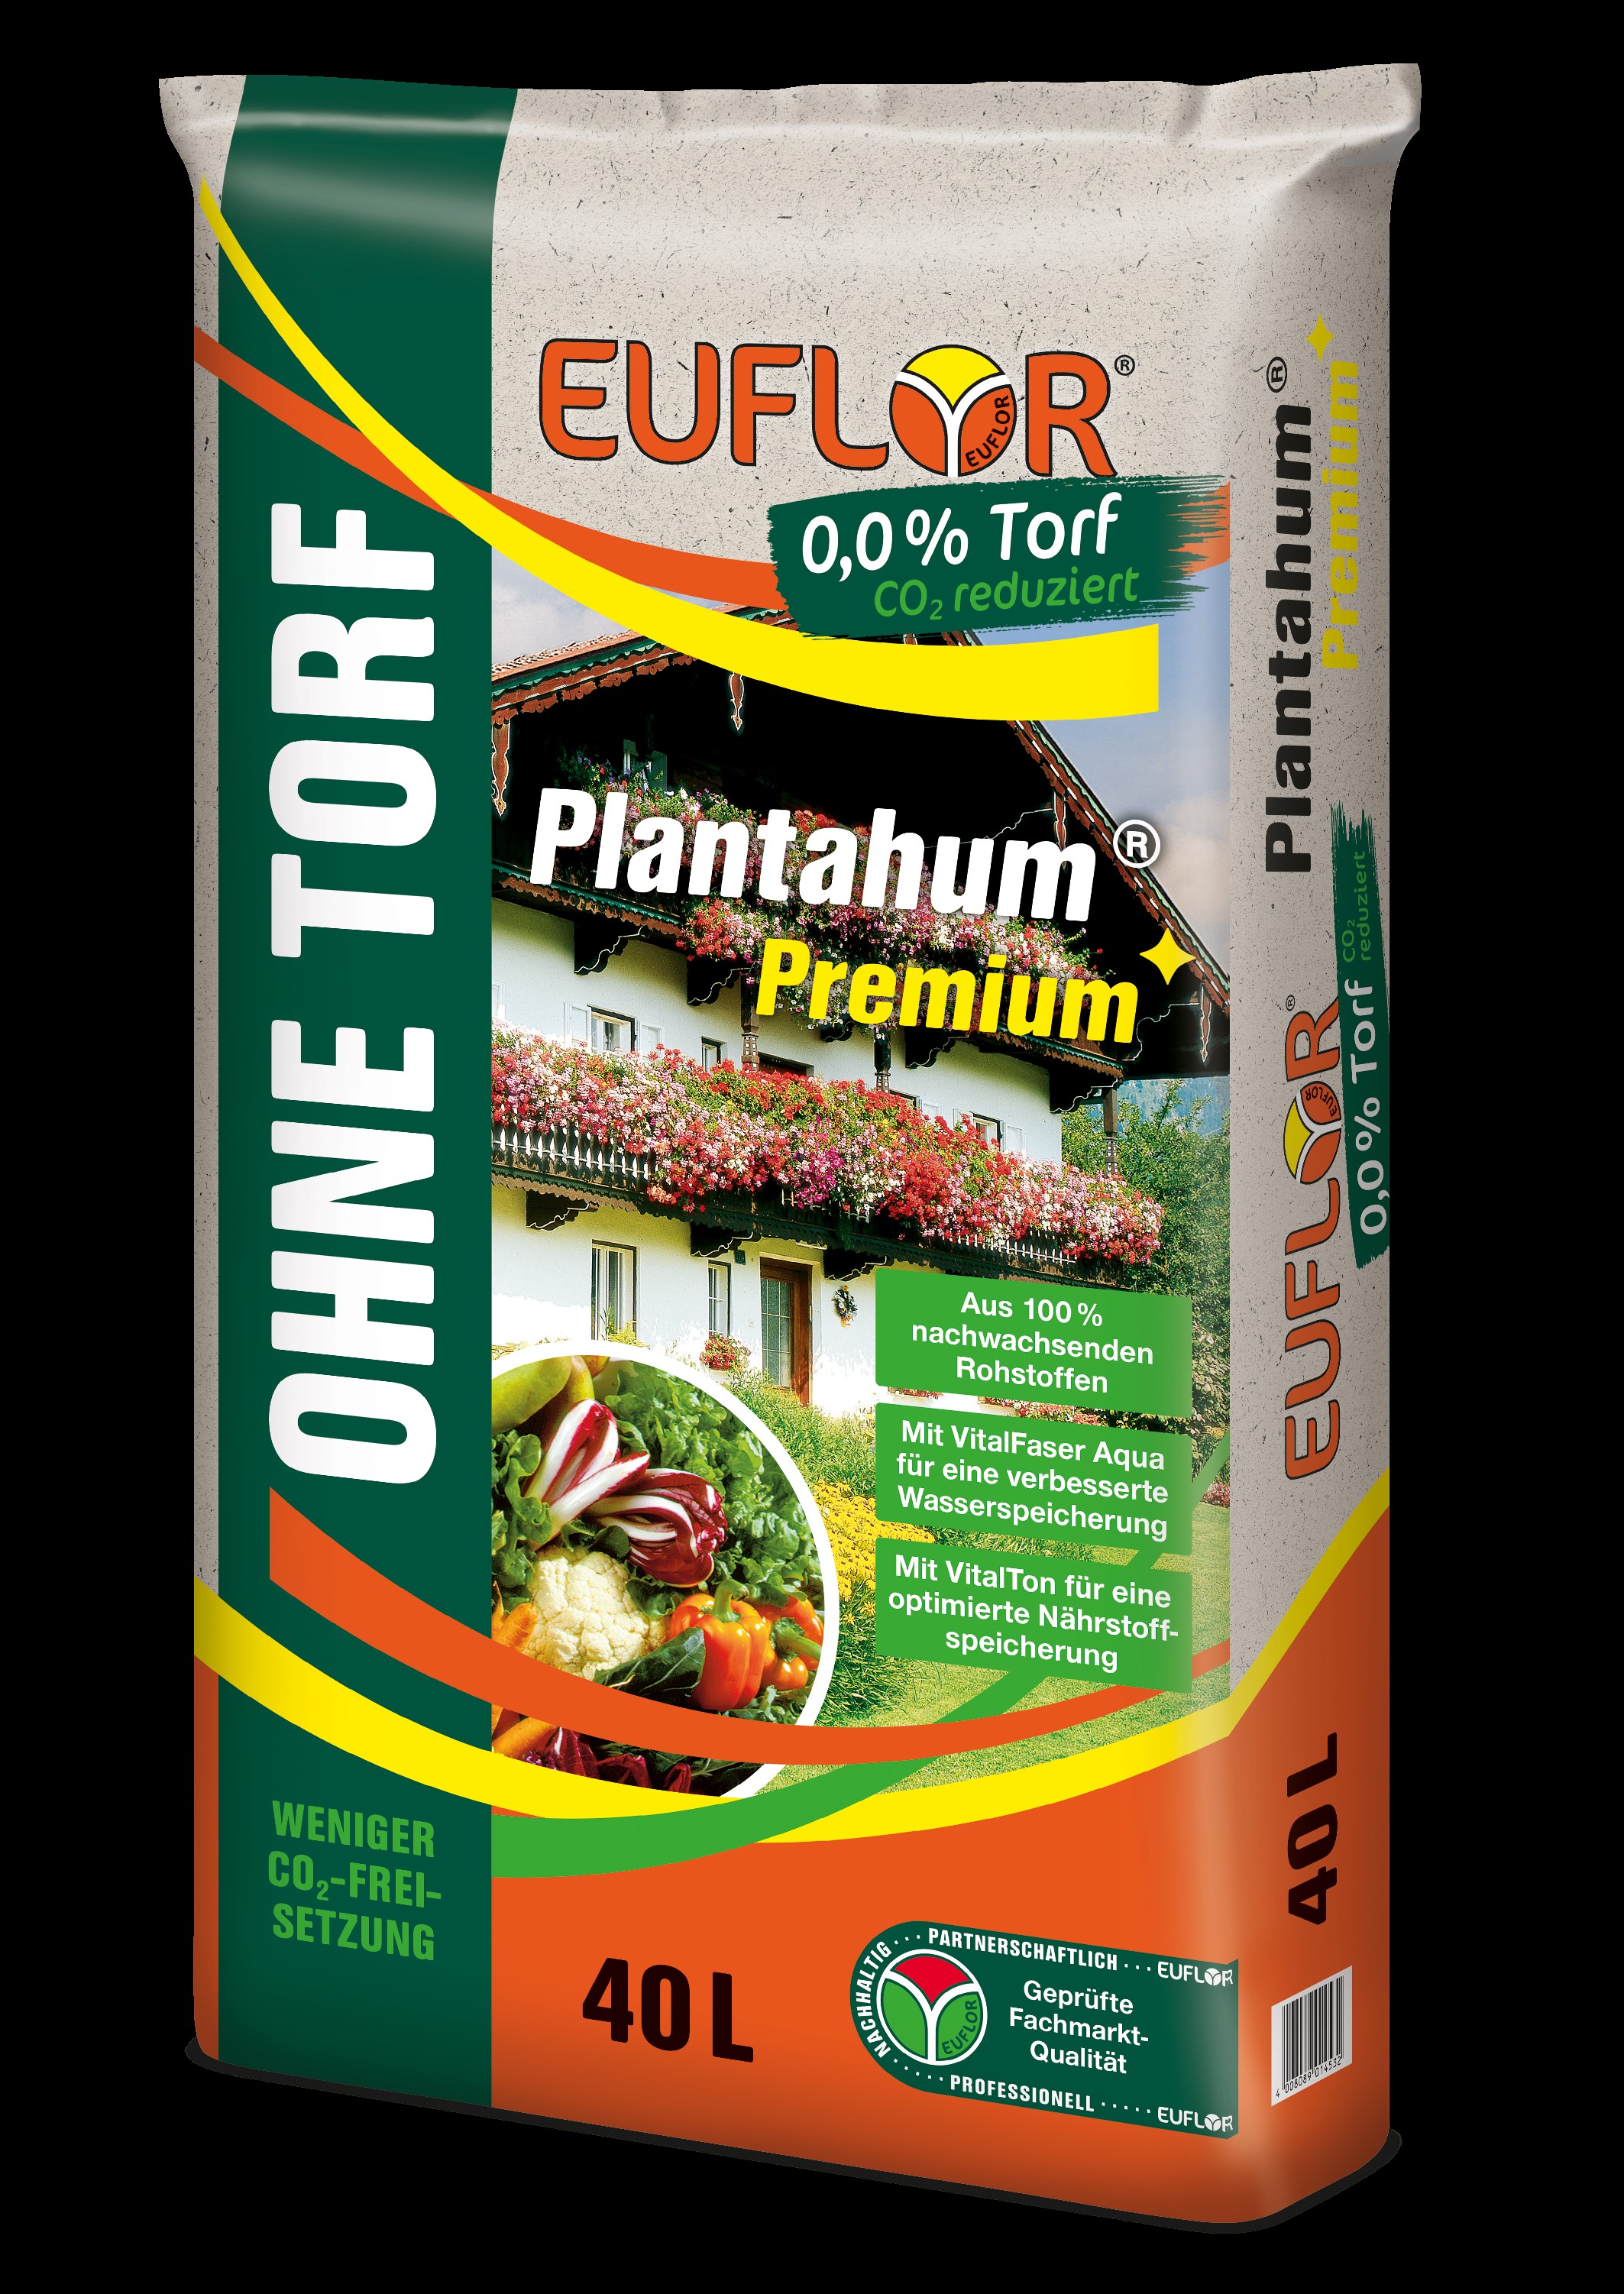 Plantahum Premium torffrei 40L